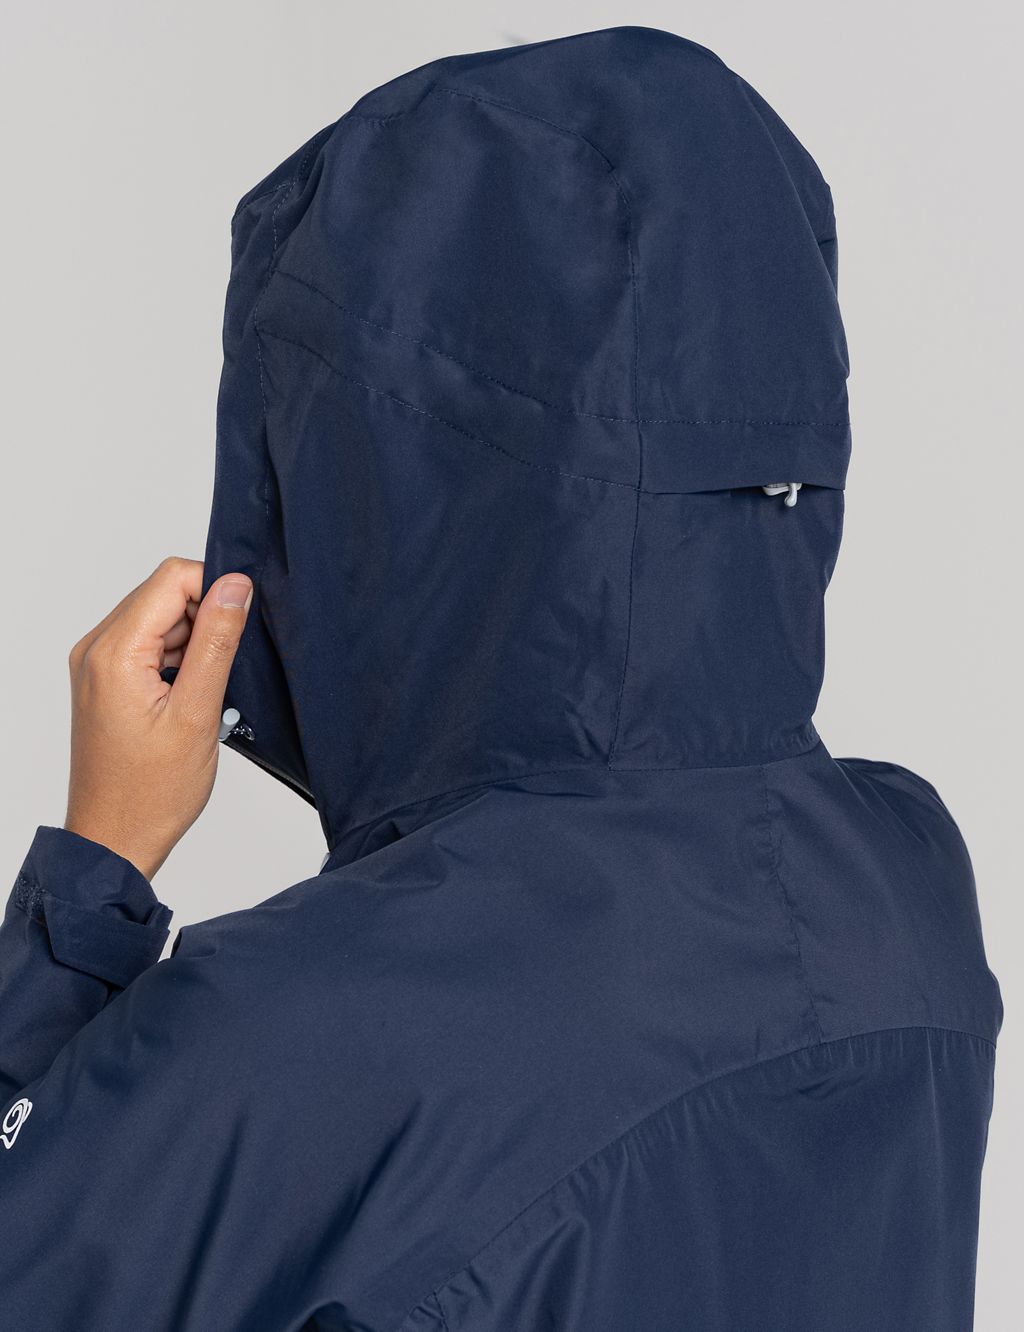 Waterproof Hooded Raincoat 5 of 8